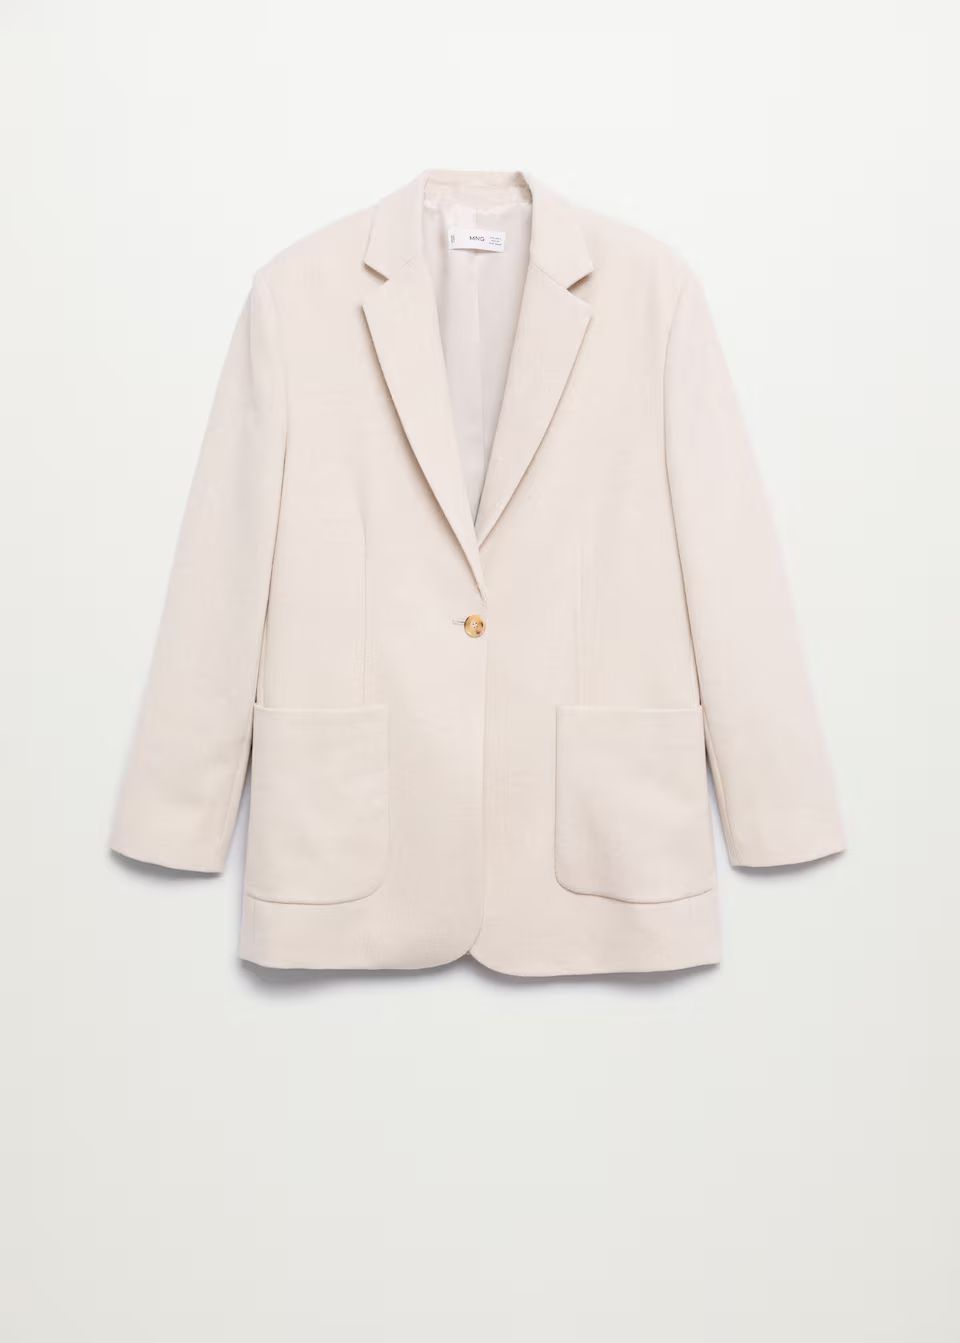 Jackets and suit jackets for Women 2021 | Mango United Kingdom | MANGO (UK)